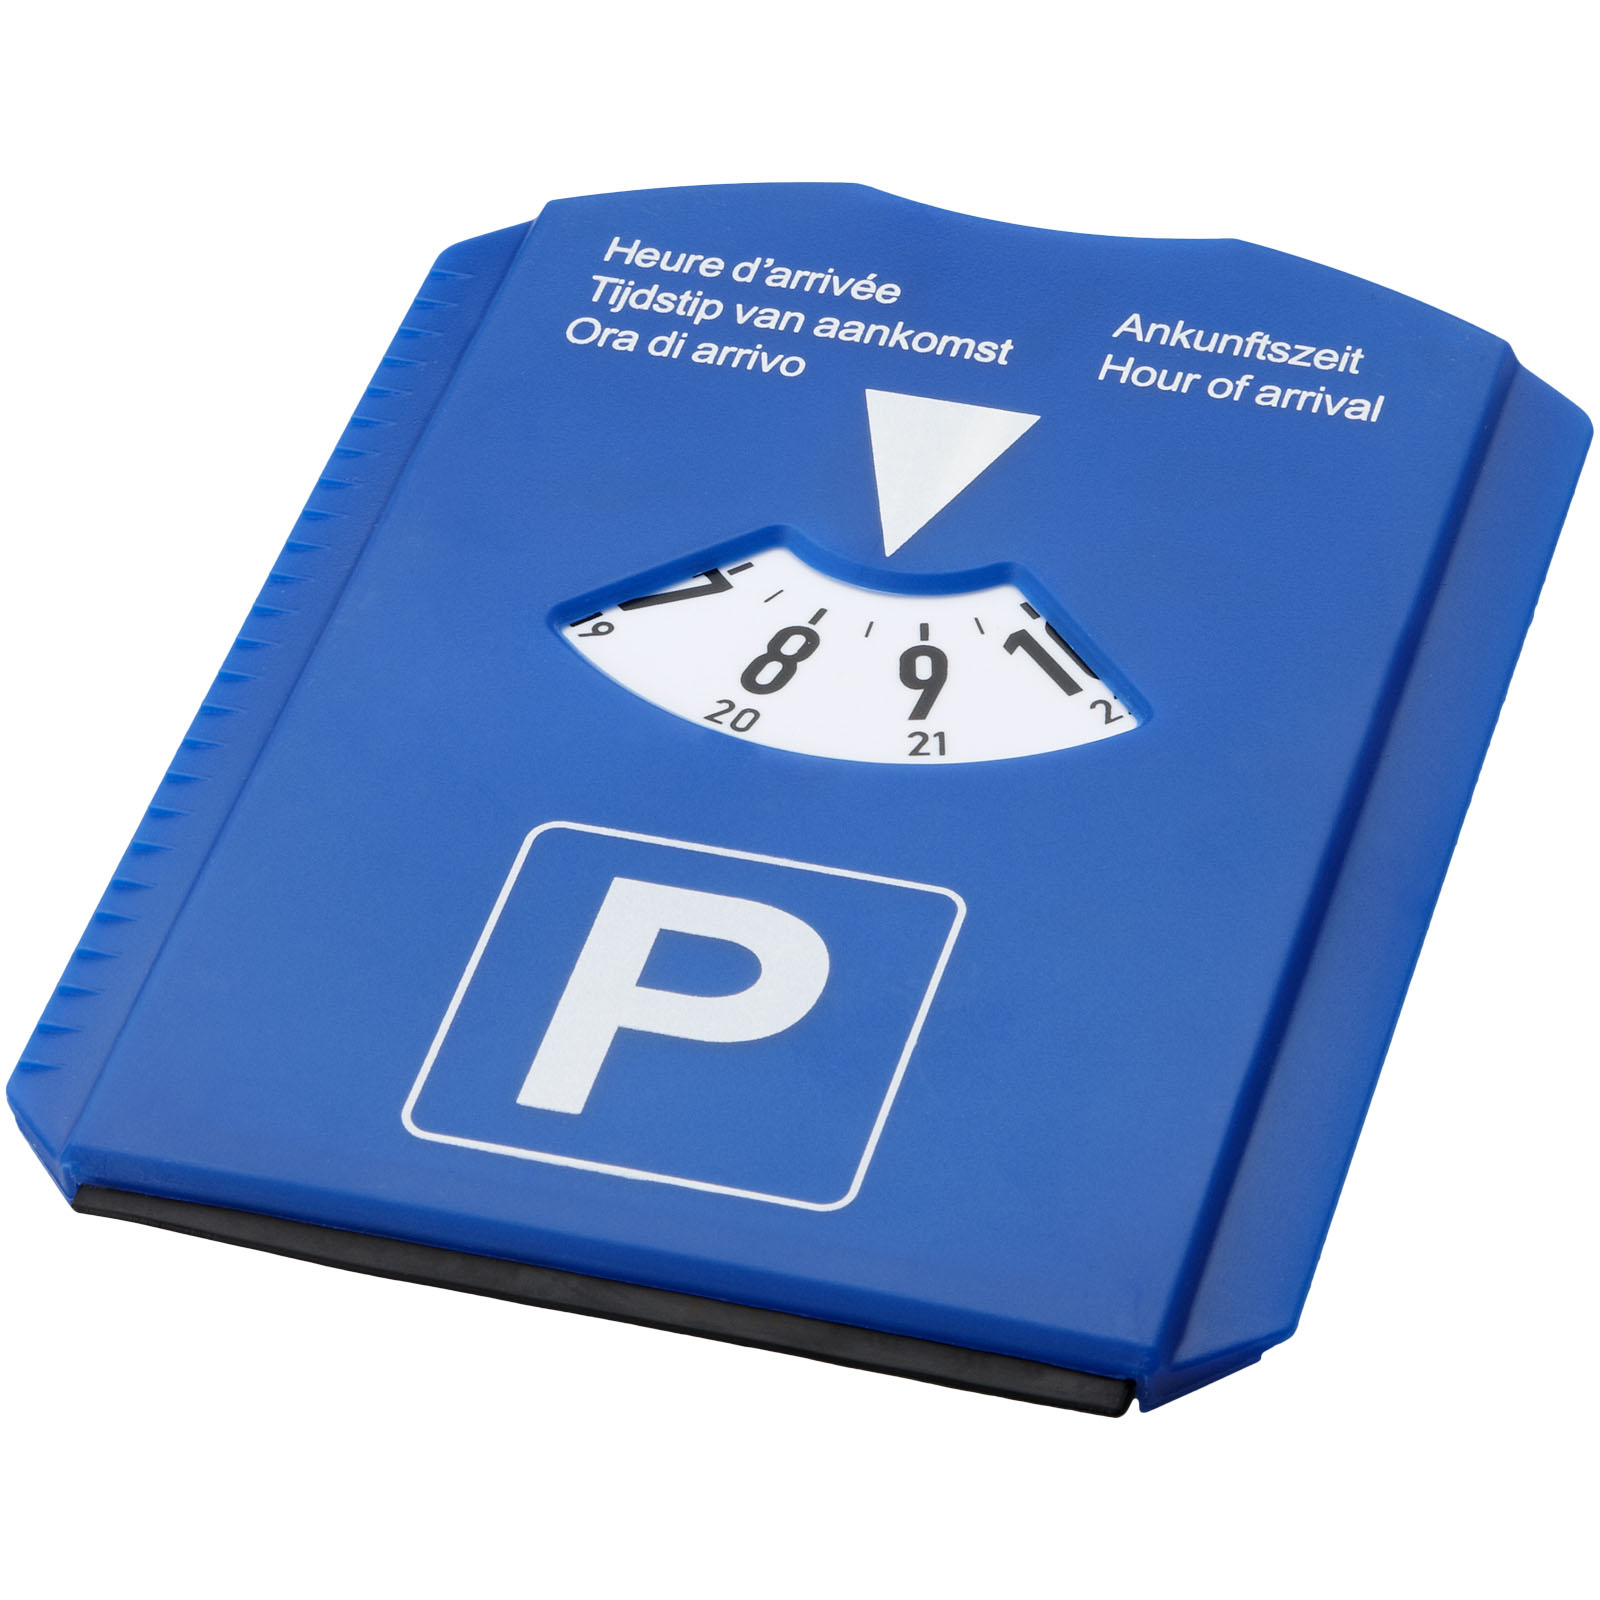 Car Accessories - Spot 5-in-1 parking disc